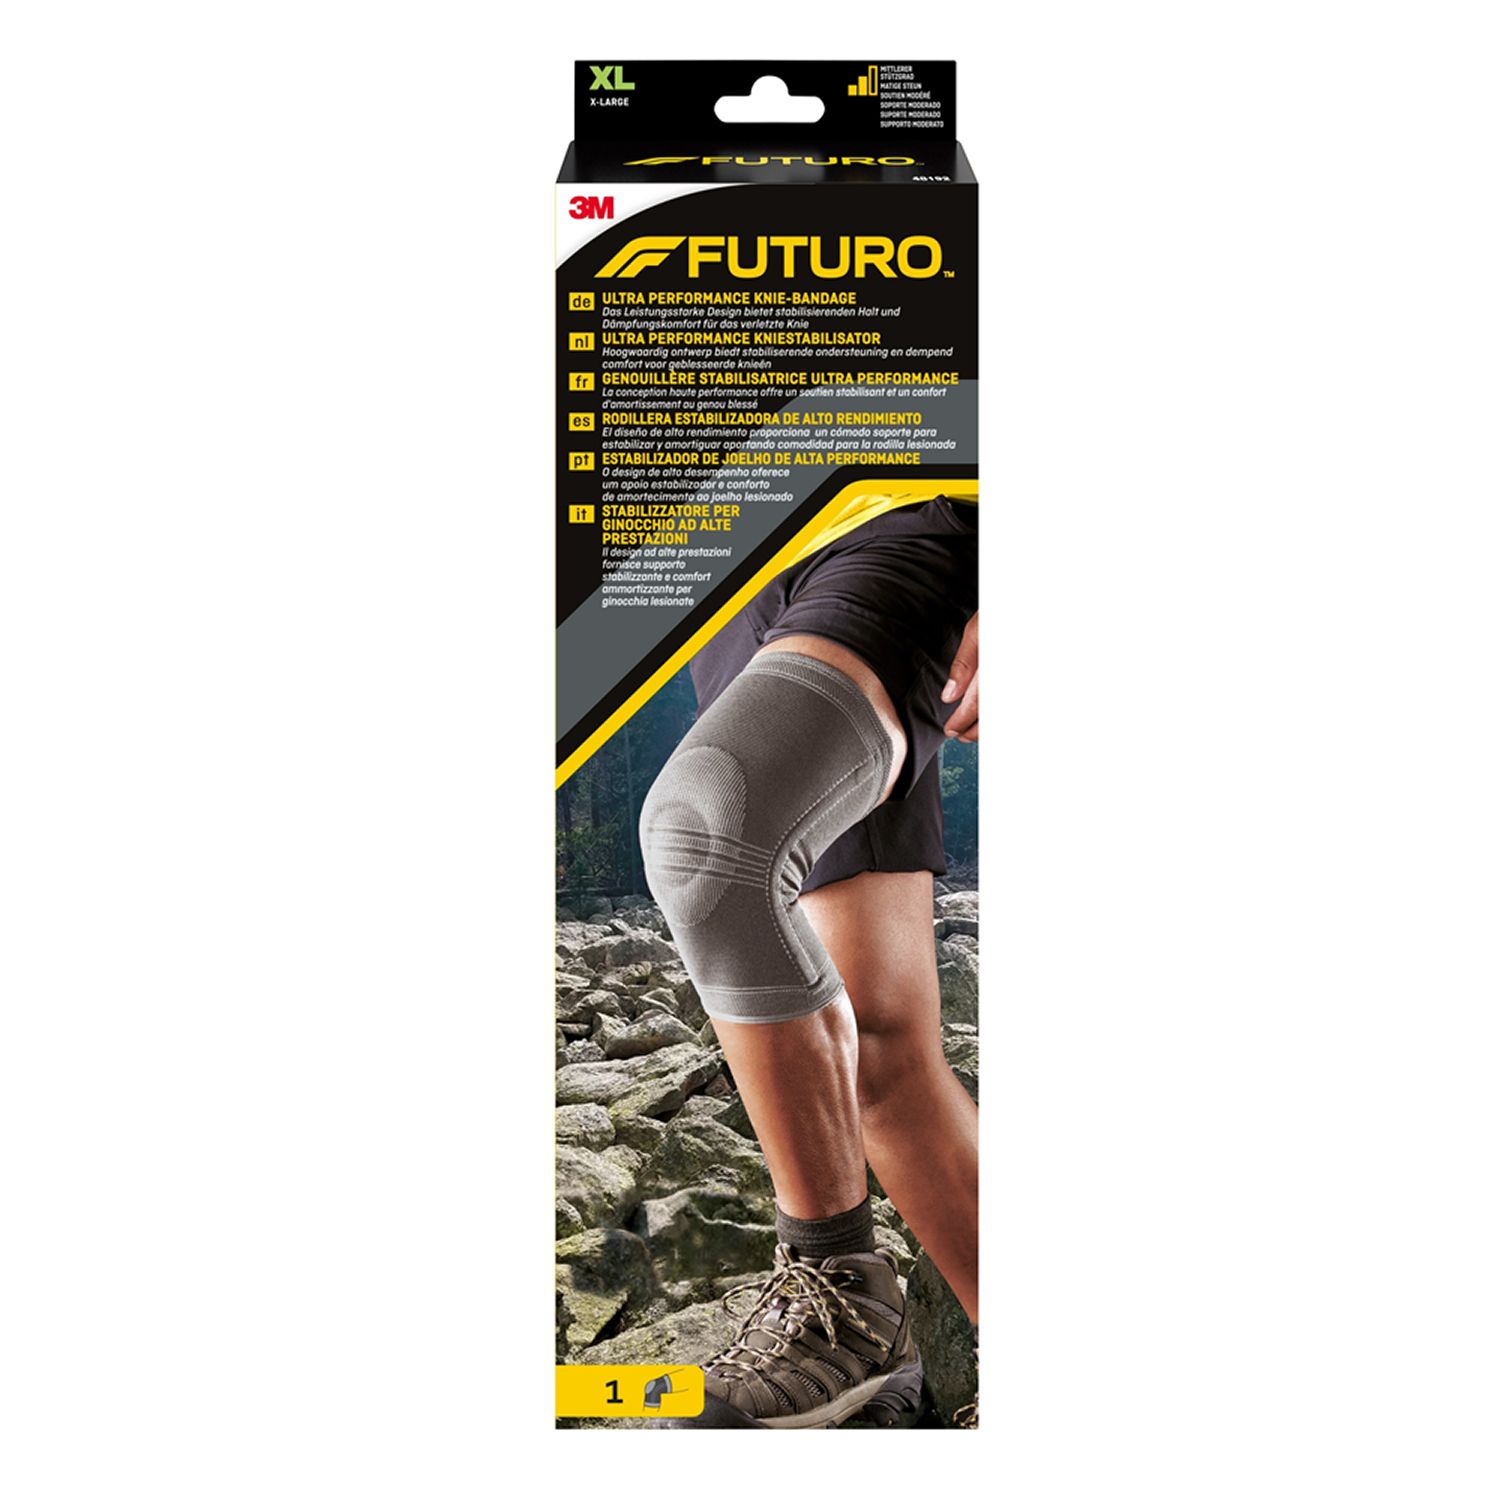 Image of FUTURO™ Stabilizzatore per ginocchio ad alte prestazioni 48192, XL